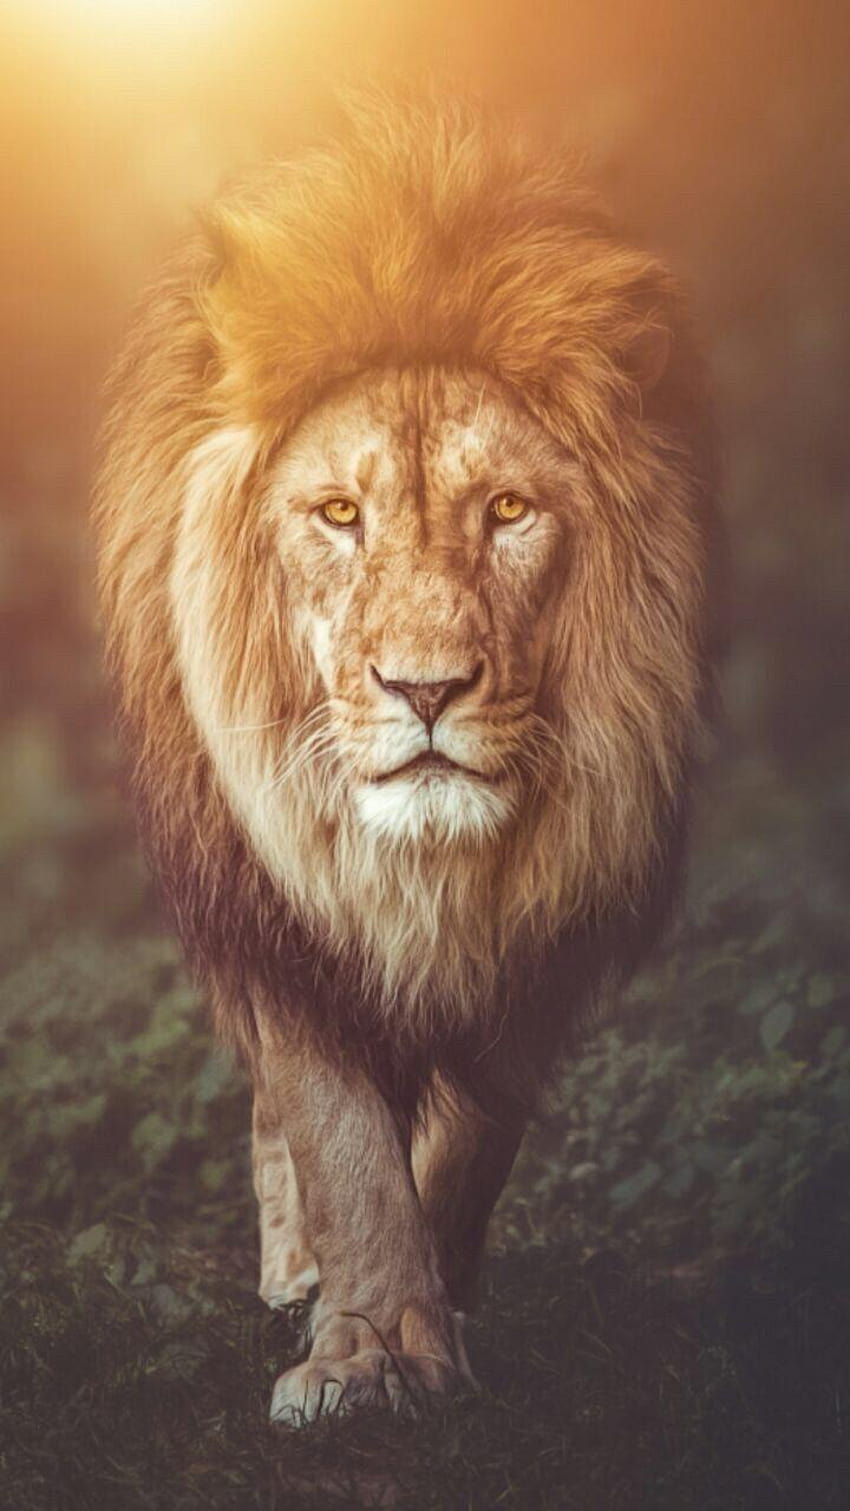 Beautiful - Lion backgrounds: Những hình nền sư tử đẹp lung linh đang chờ đón bạn. Với những hình ảnh chụp sư tử trong hoang dã, bạn sẽ được trải nghiệm cảm giác thích thú của việc sống giữa thiên nhiên hoang dã.